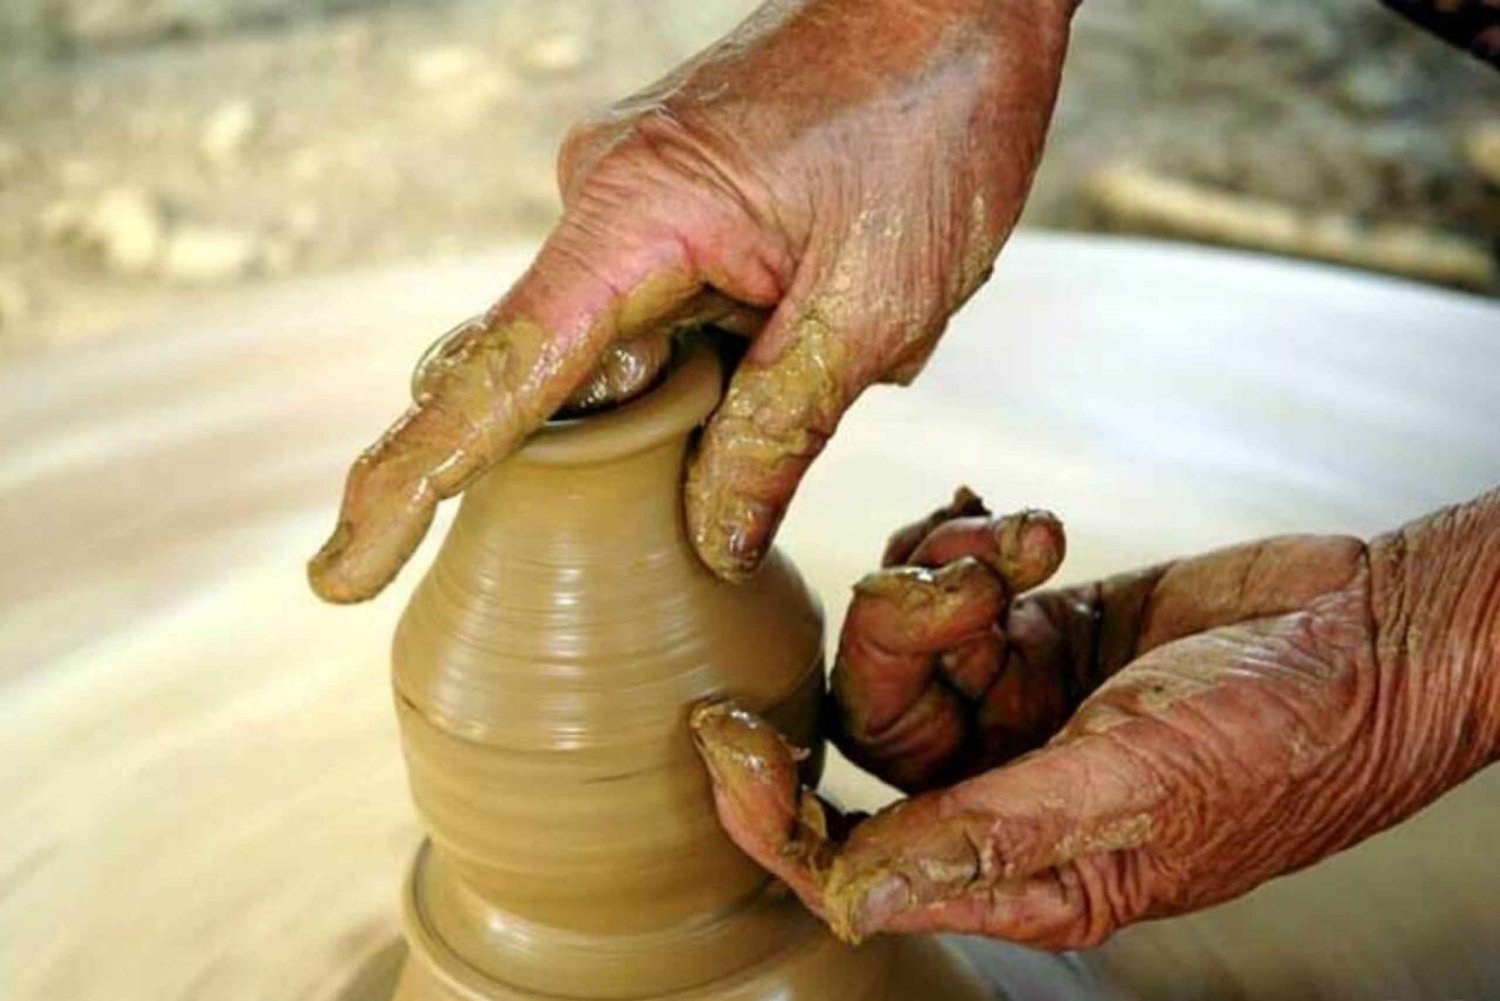 Vive la experiencia de hacer cerámica con un artesano local en una casa local